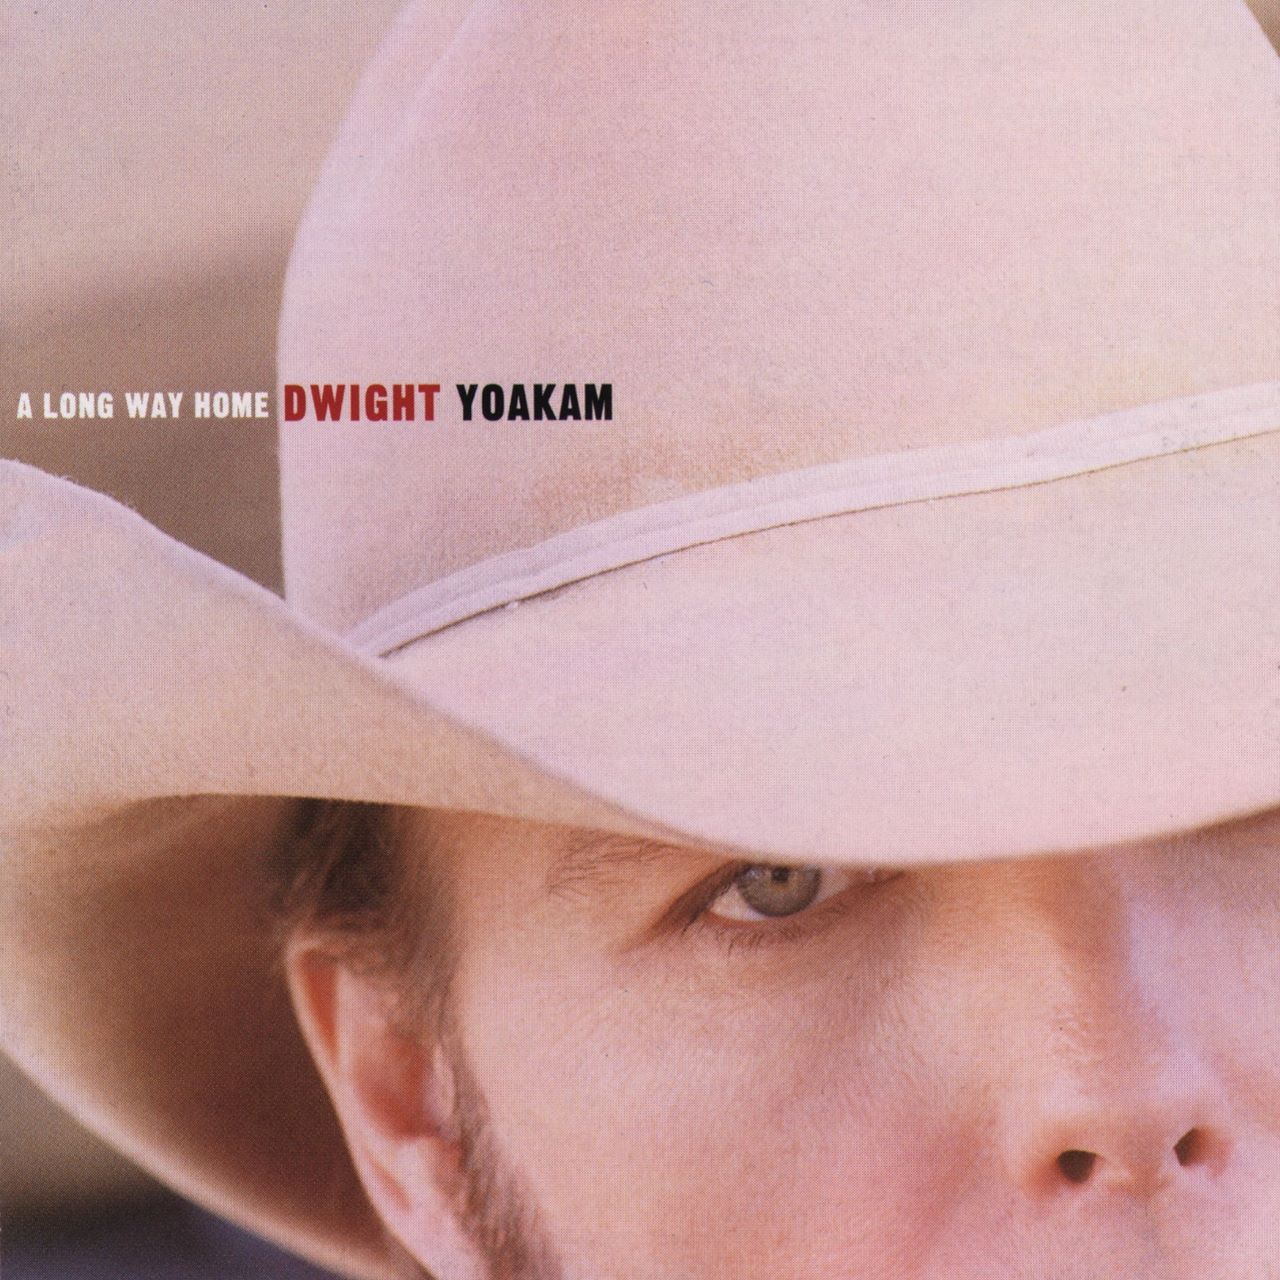 Dwight Yoakam – A Long Way Home cover album